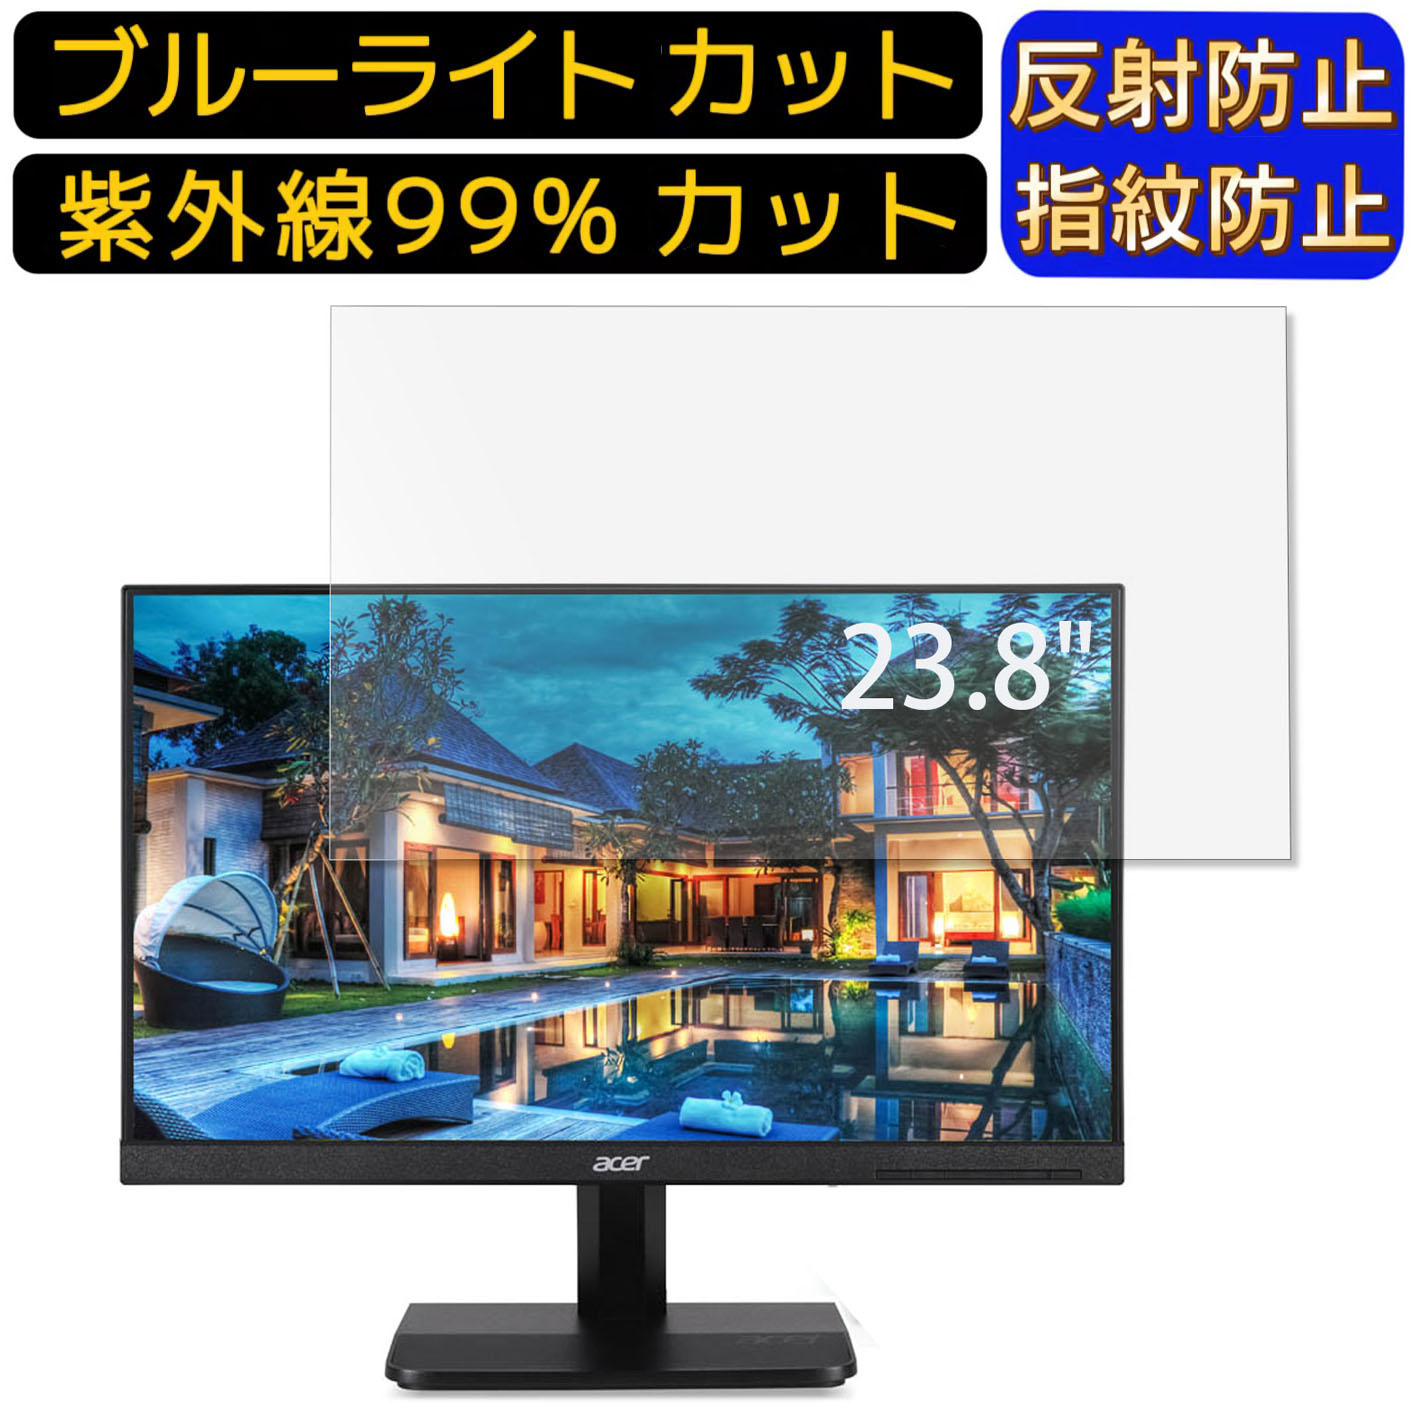 【ポイント2倍】Acer VA241Ybmid (VA1) 23.8